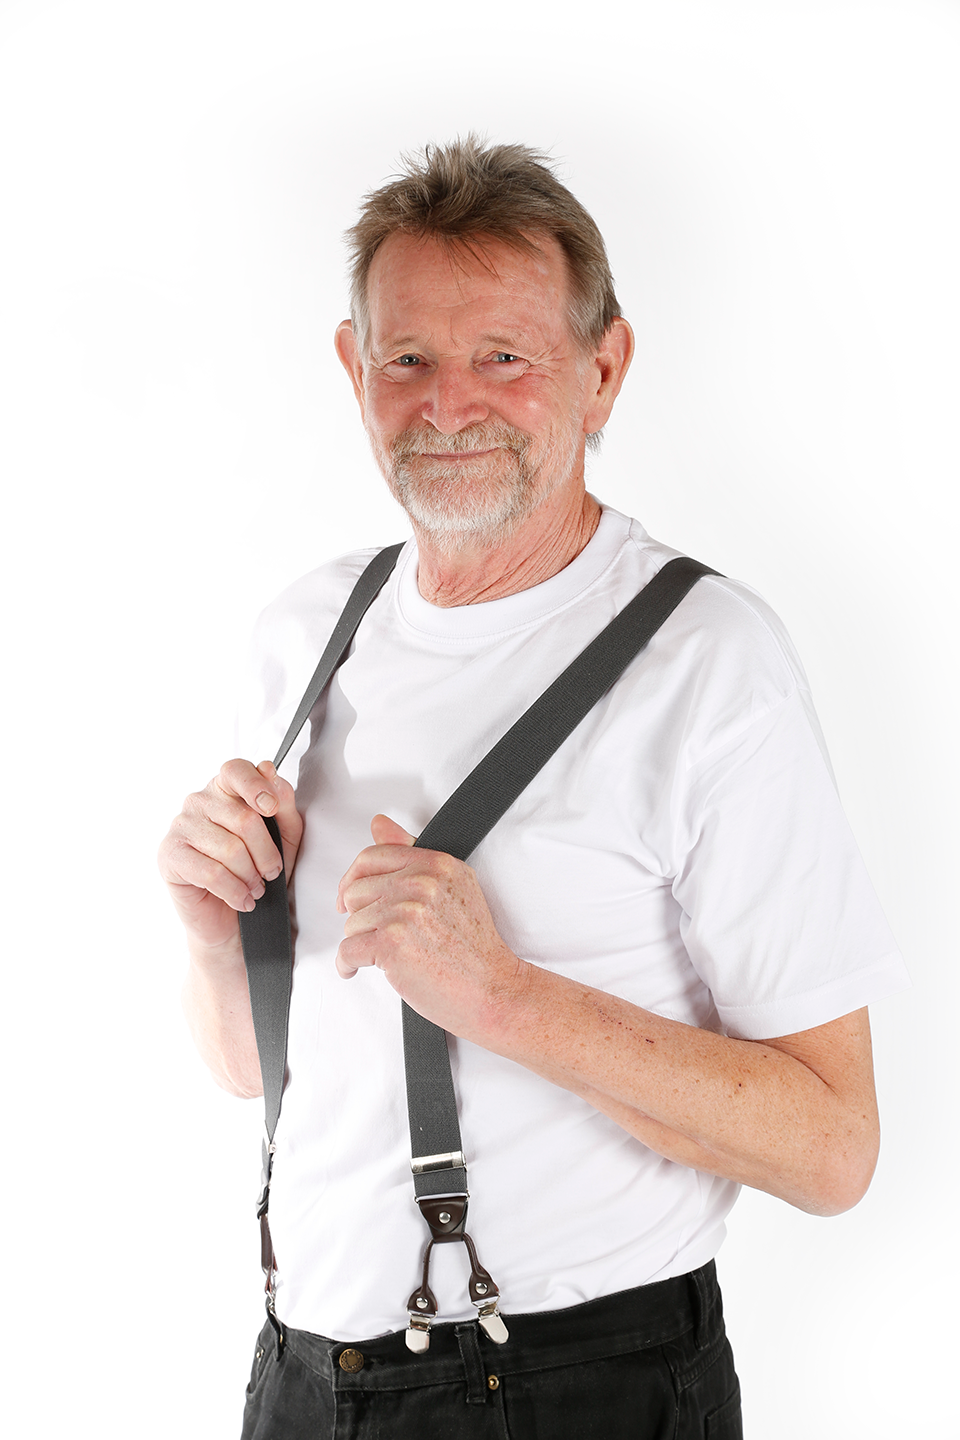 Helbredstjek 70 år: Portræt af en mand i hans 70'ere, der står iført en hvid T-shirt og sorte bukser med seler. Han smiler mod kameraet.